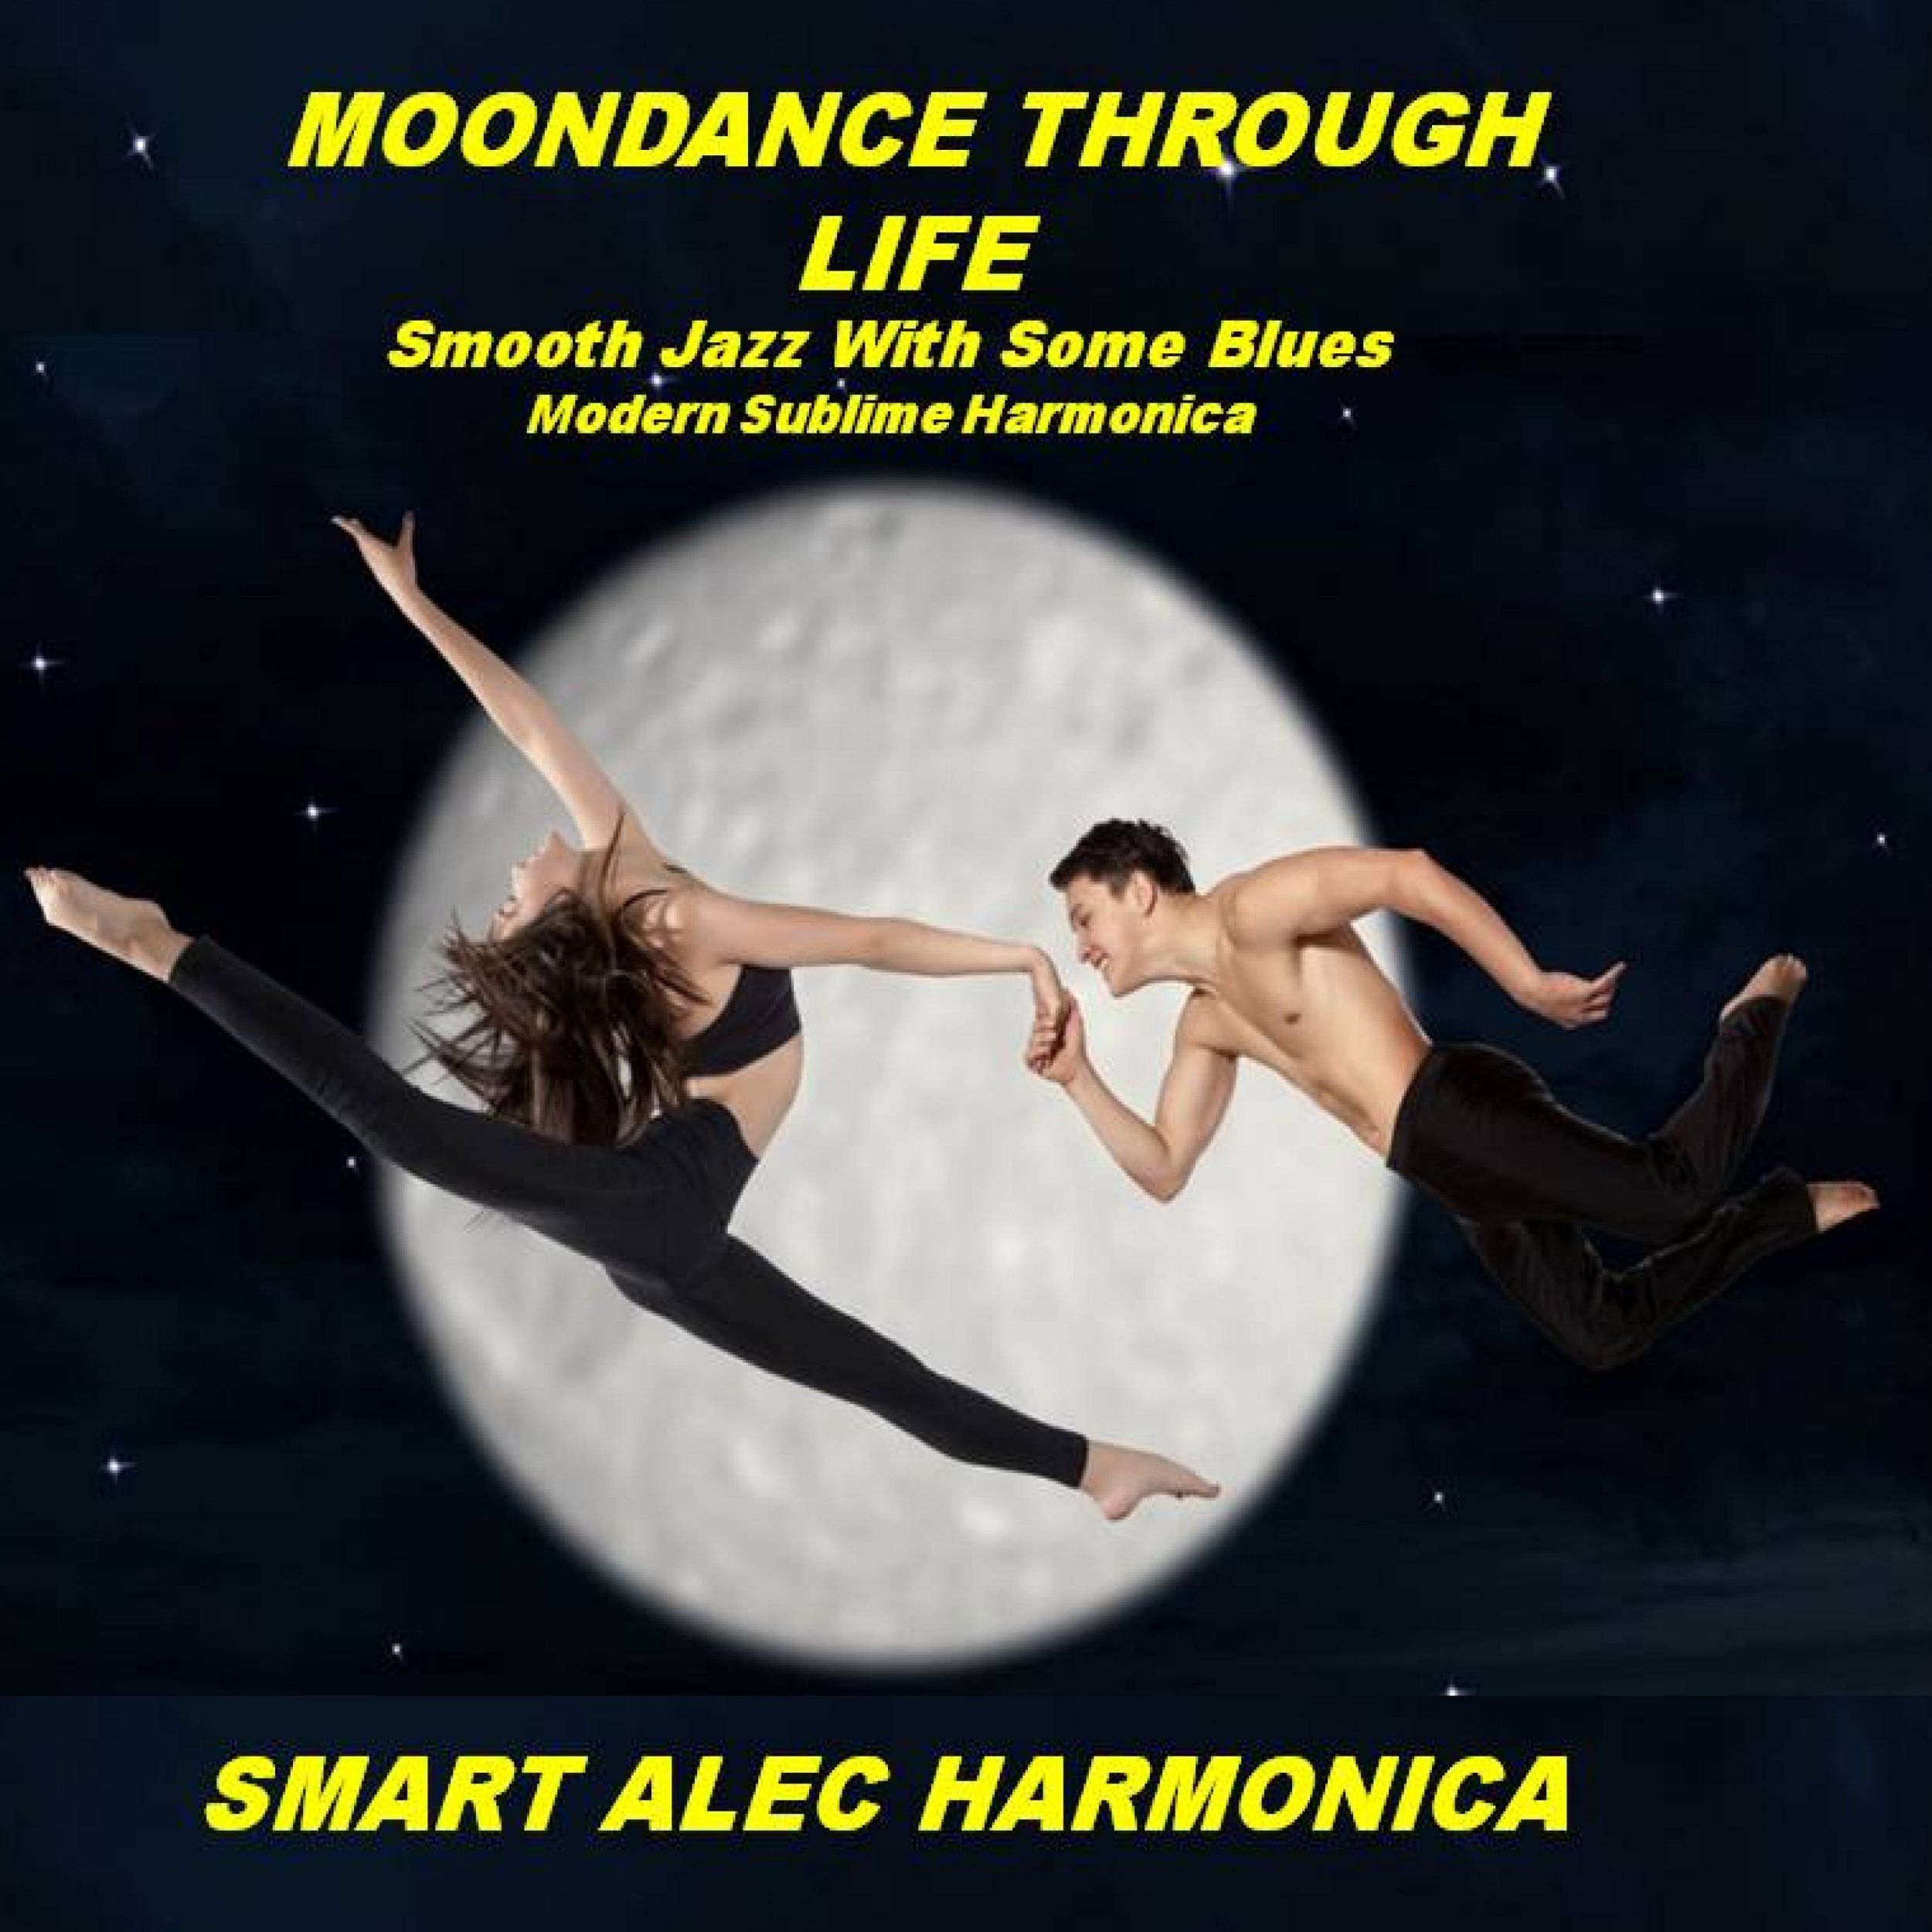 Smart Alec Harmonica Album